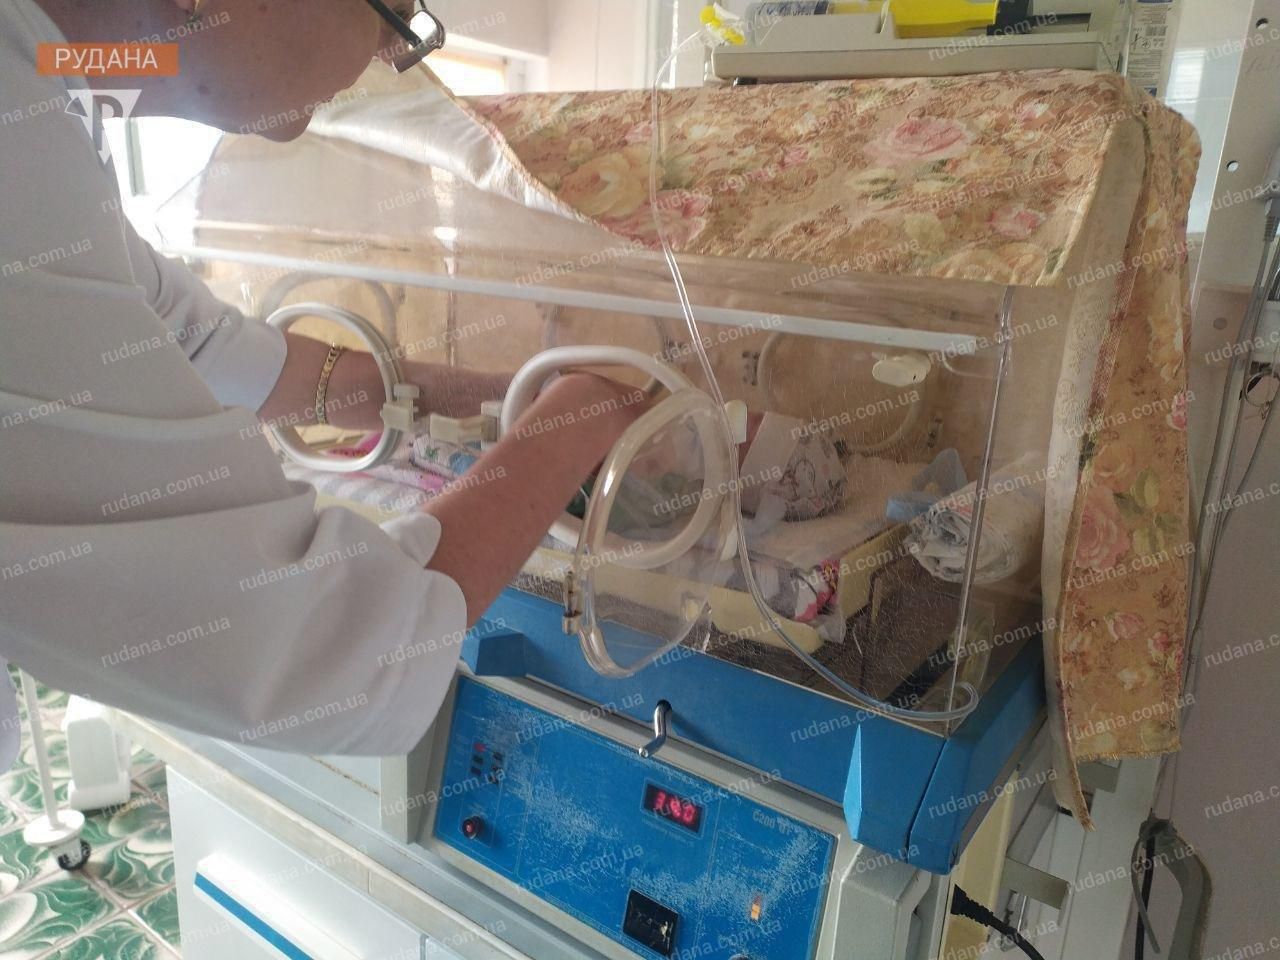 Мать оставила новорожденного младенца в подъезде в Кривом Роге